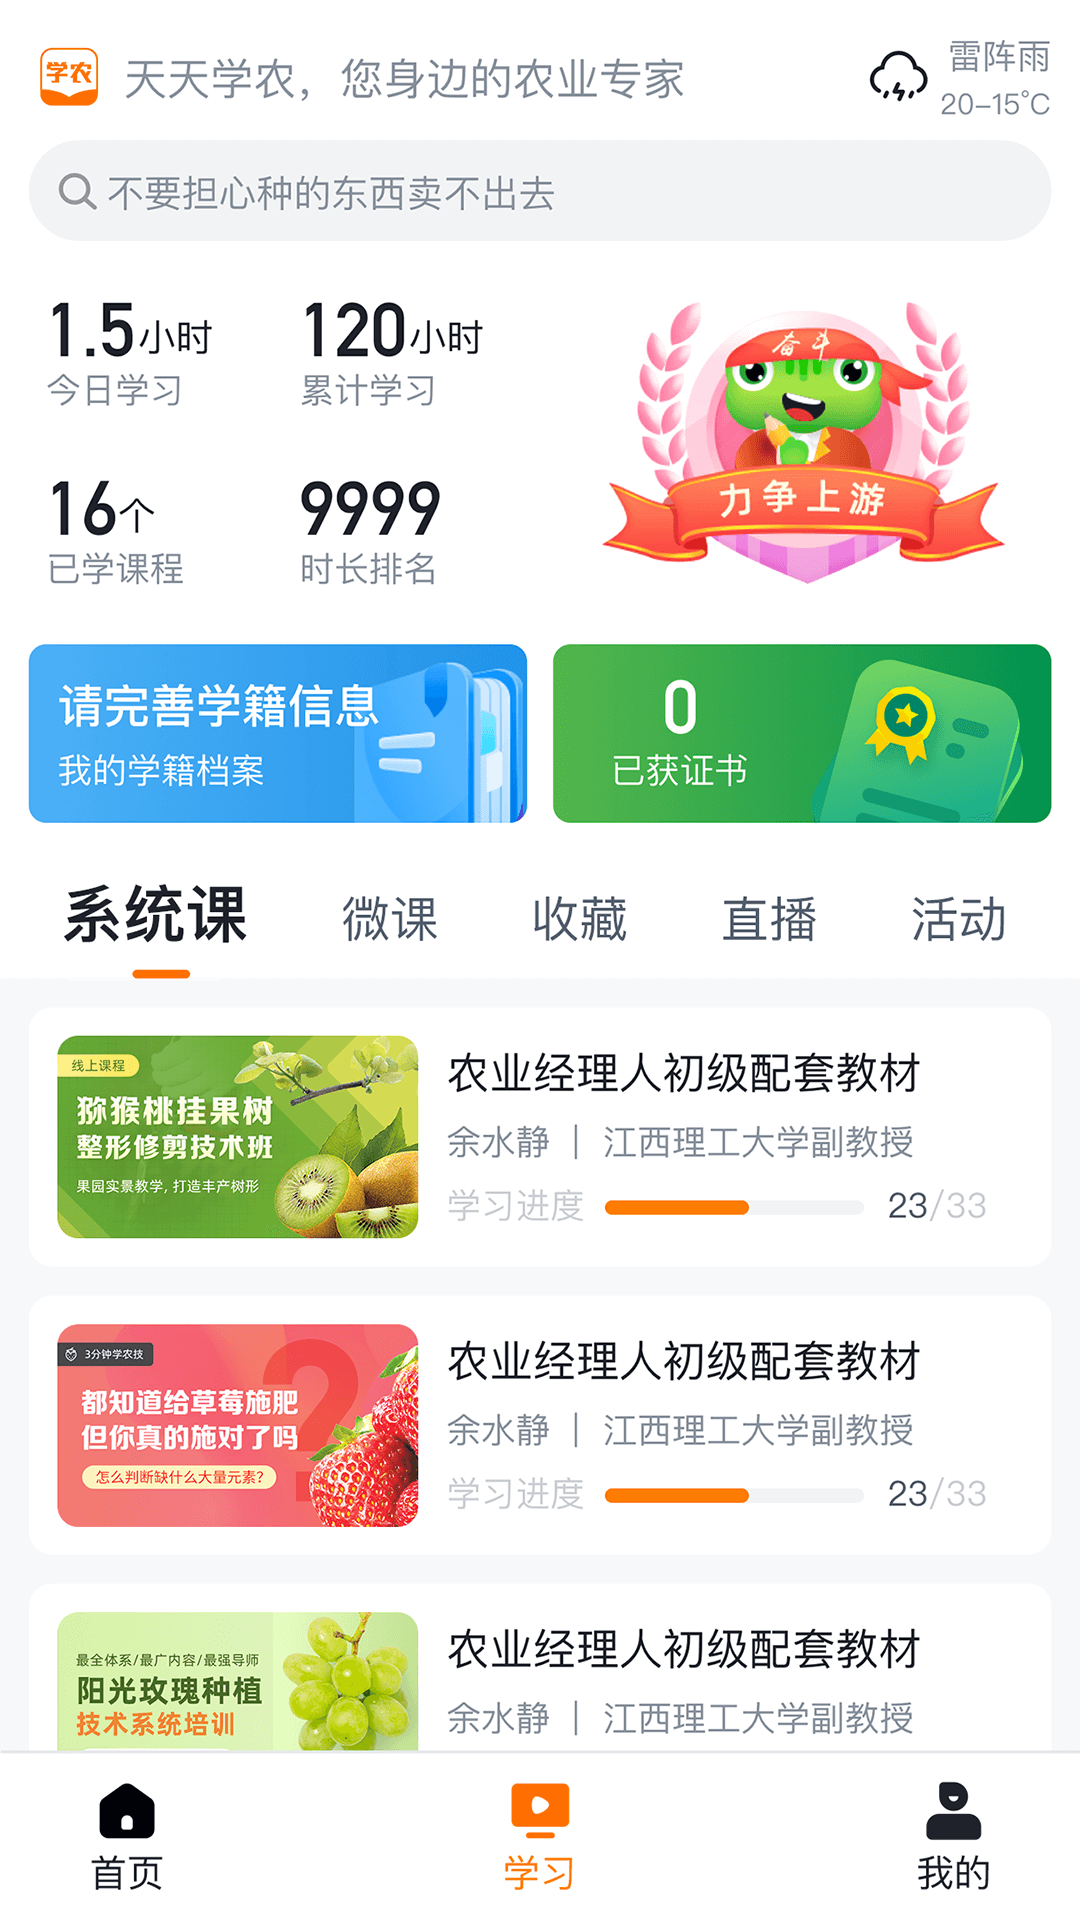 天天学农app